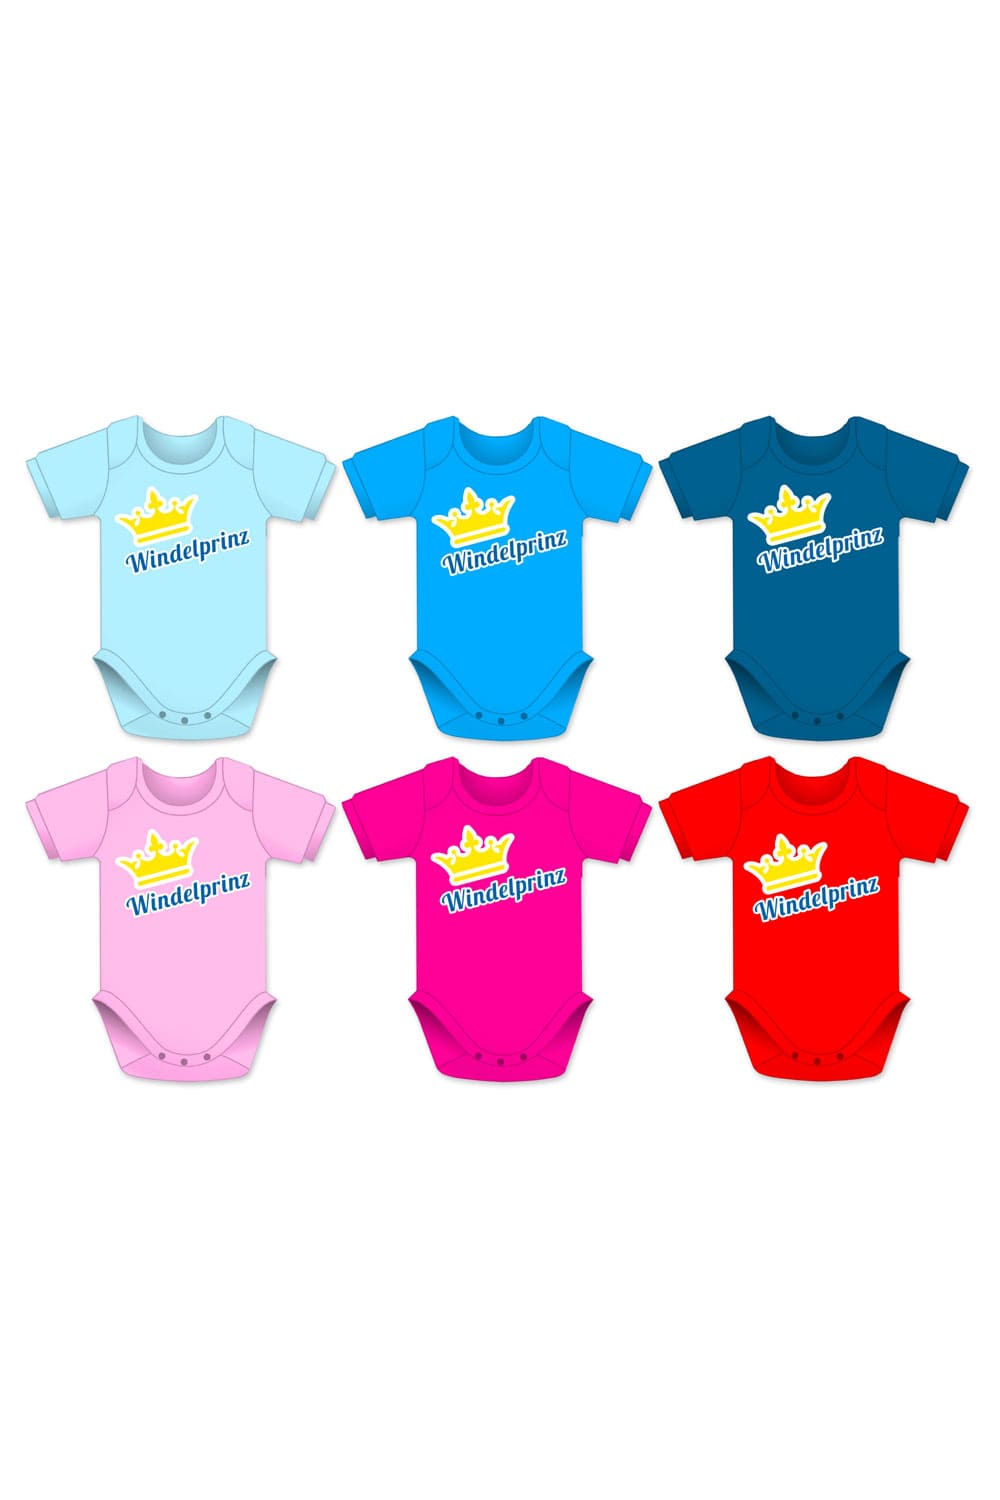 Windelprinz Babybodies in diversen Farben wie hellblau, dunkelblau, türkis, rot als Baby Geschenk für ein Junge